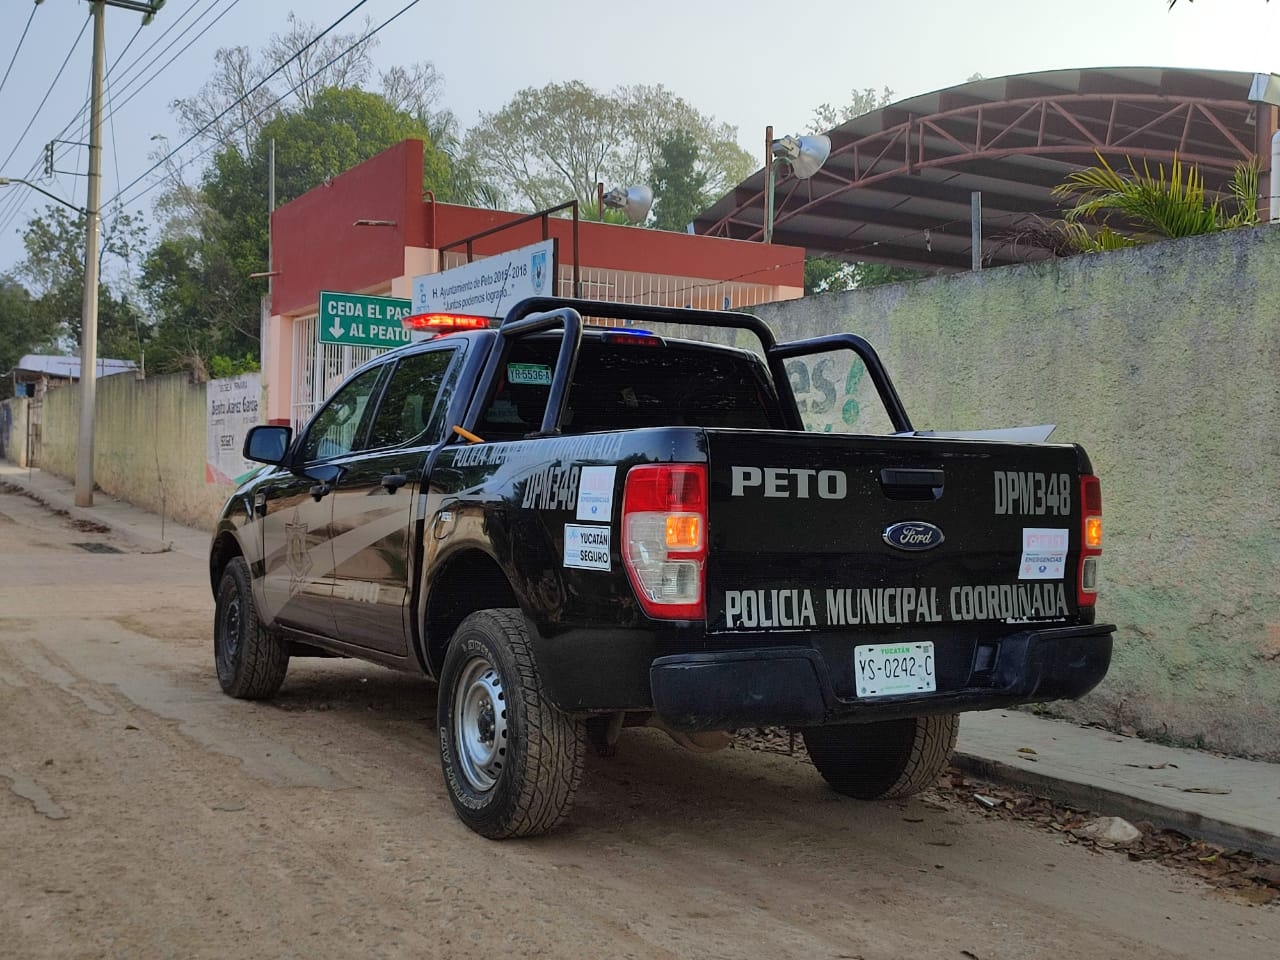 Roban escuela primaria a unos metros de una caseta de policías en Peto